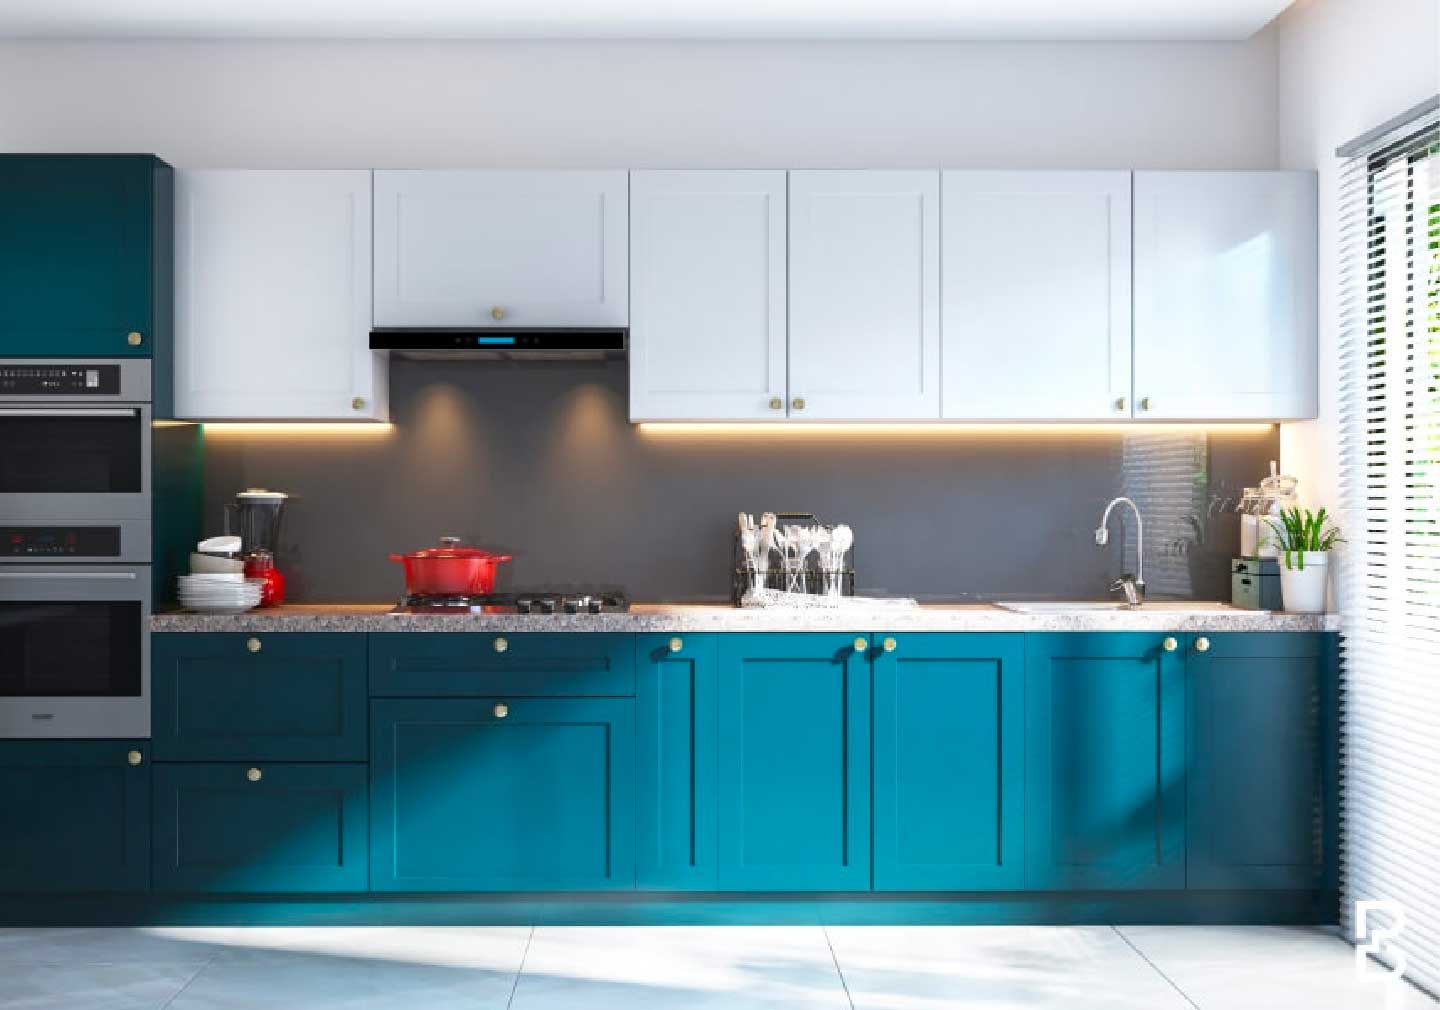 Smart Kitchen with Smart Accessories - Kitchen interior design